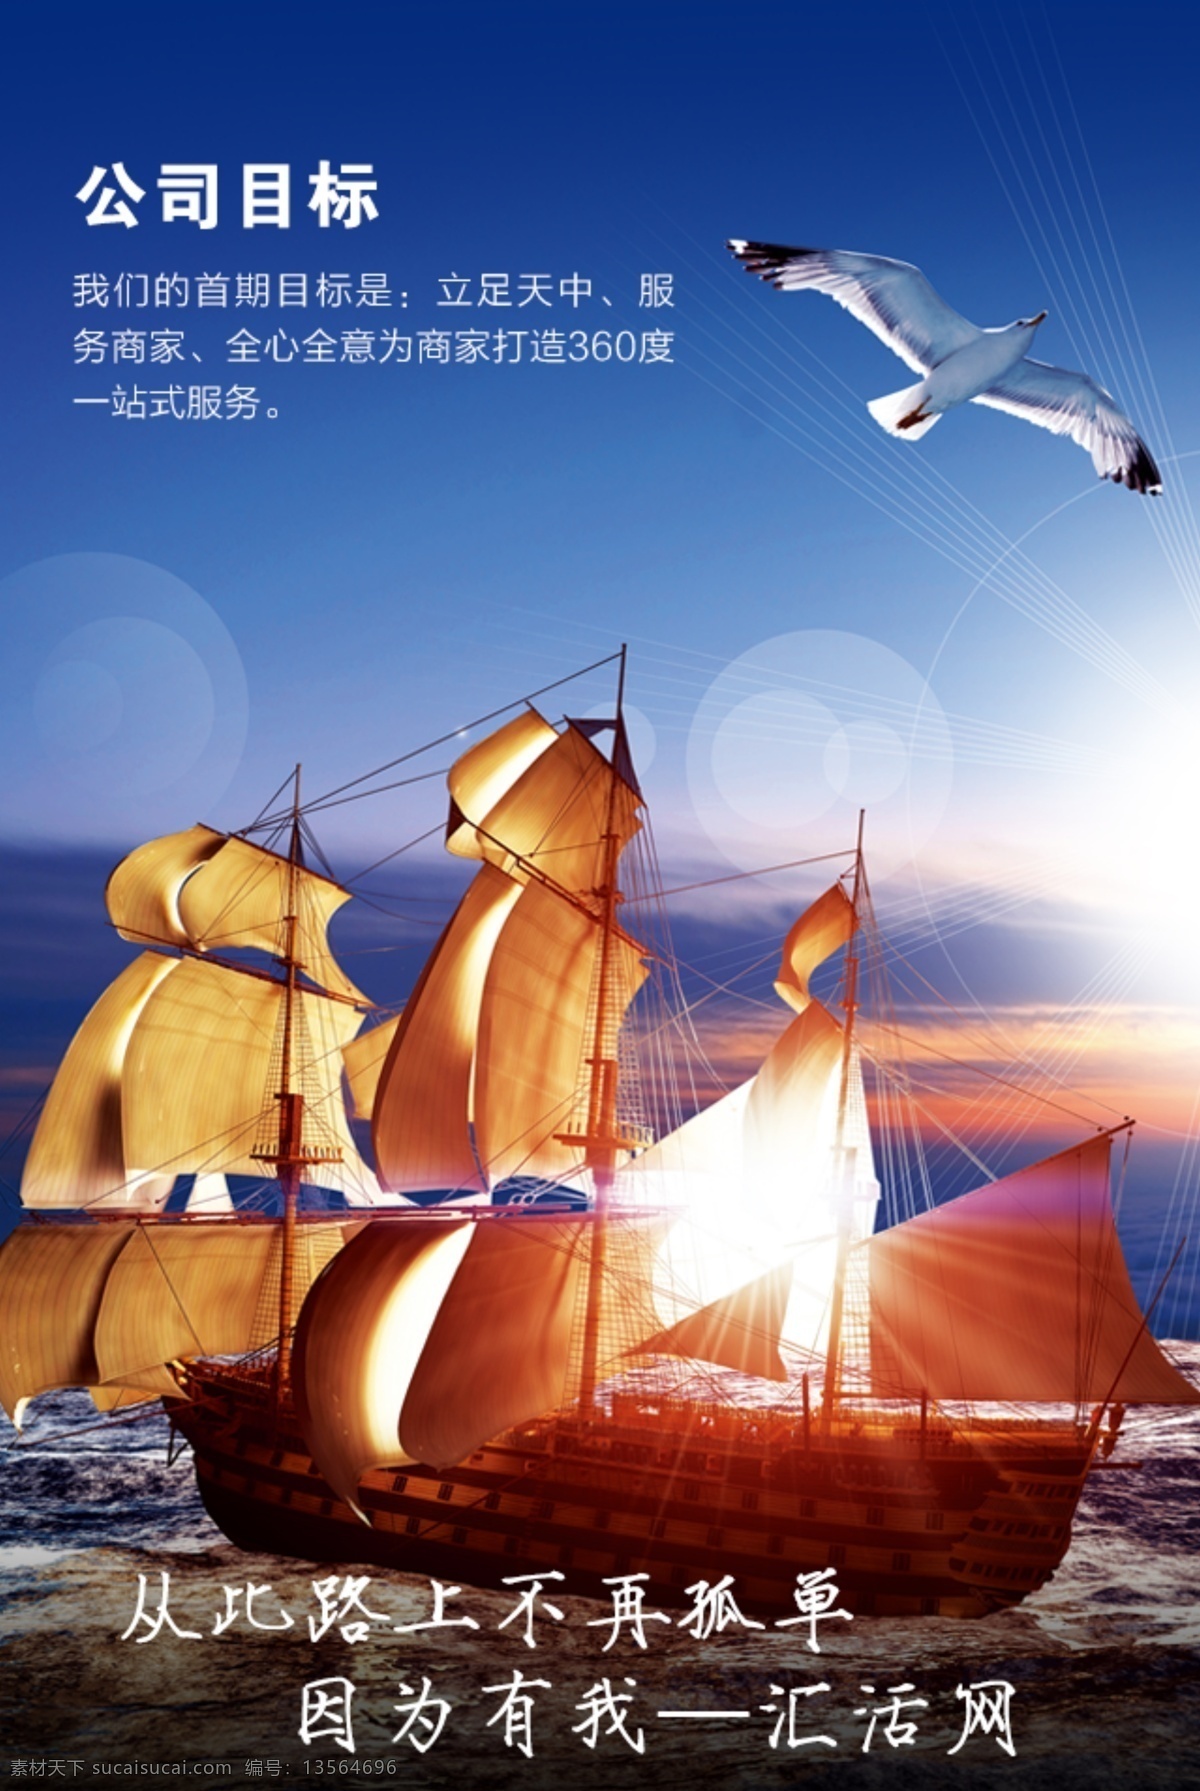 公司 目标 psd格式 大海 帆船 启航 起航 公司目标 原创设计 原创海报